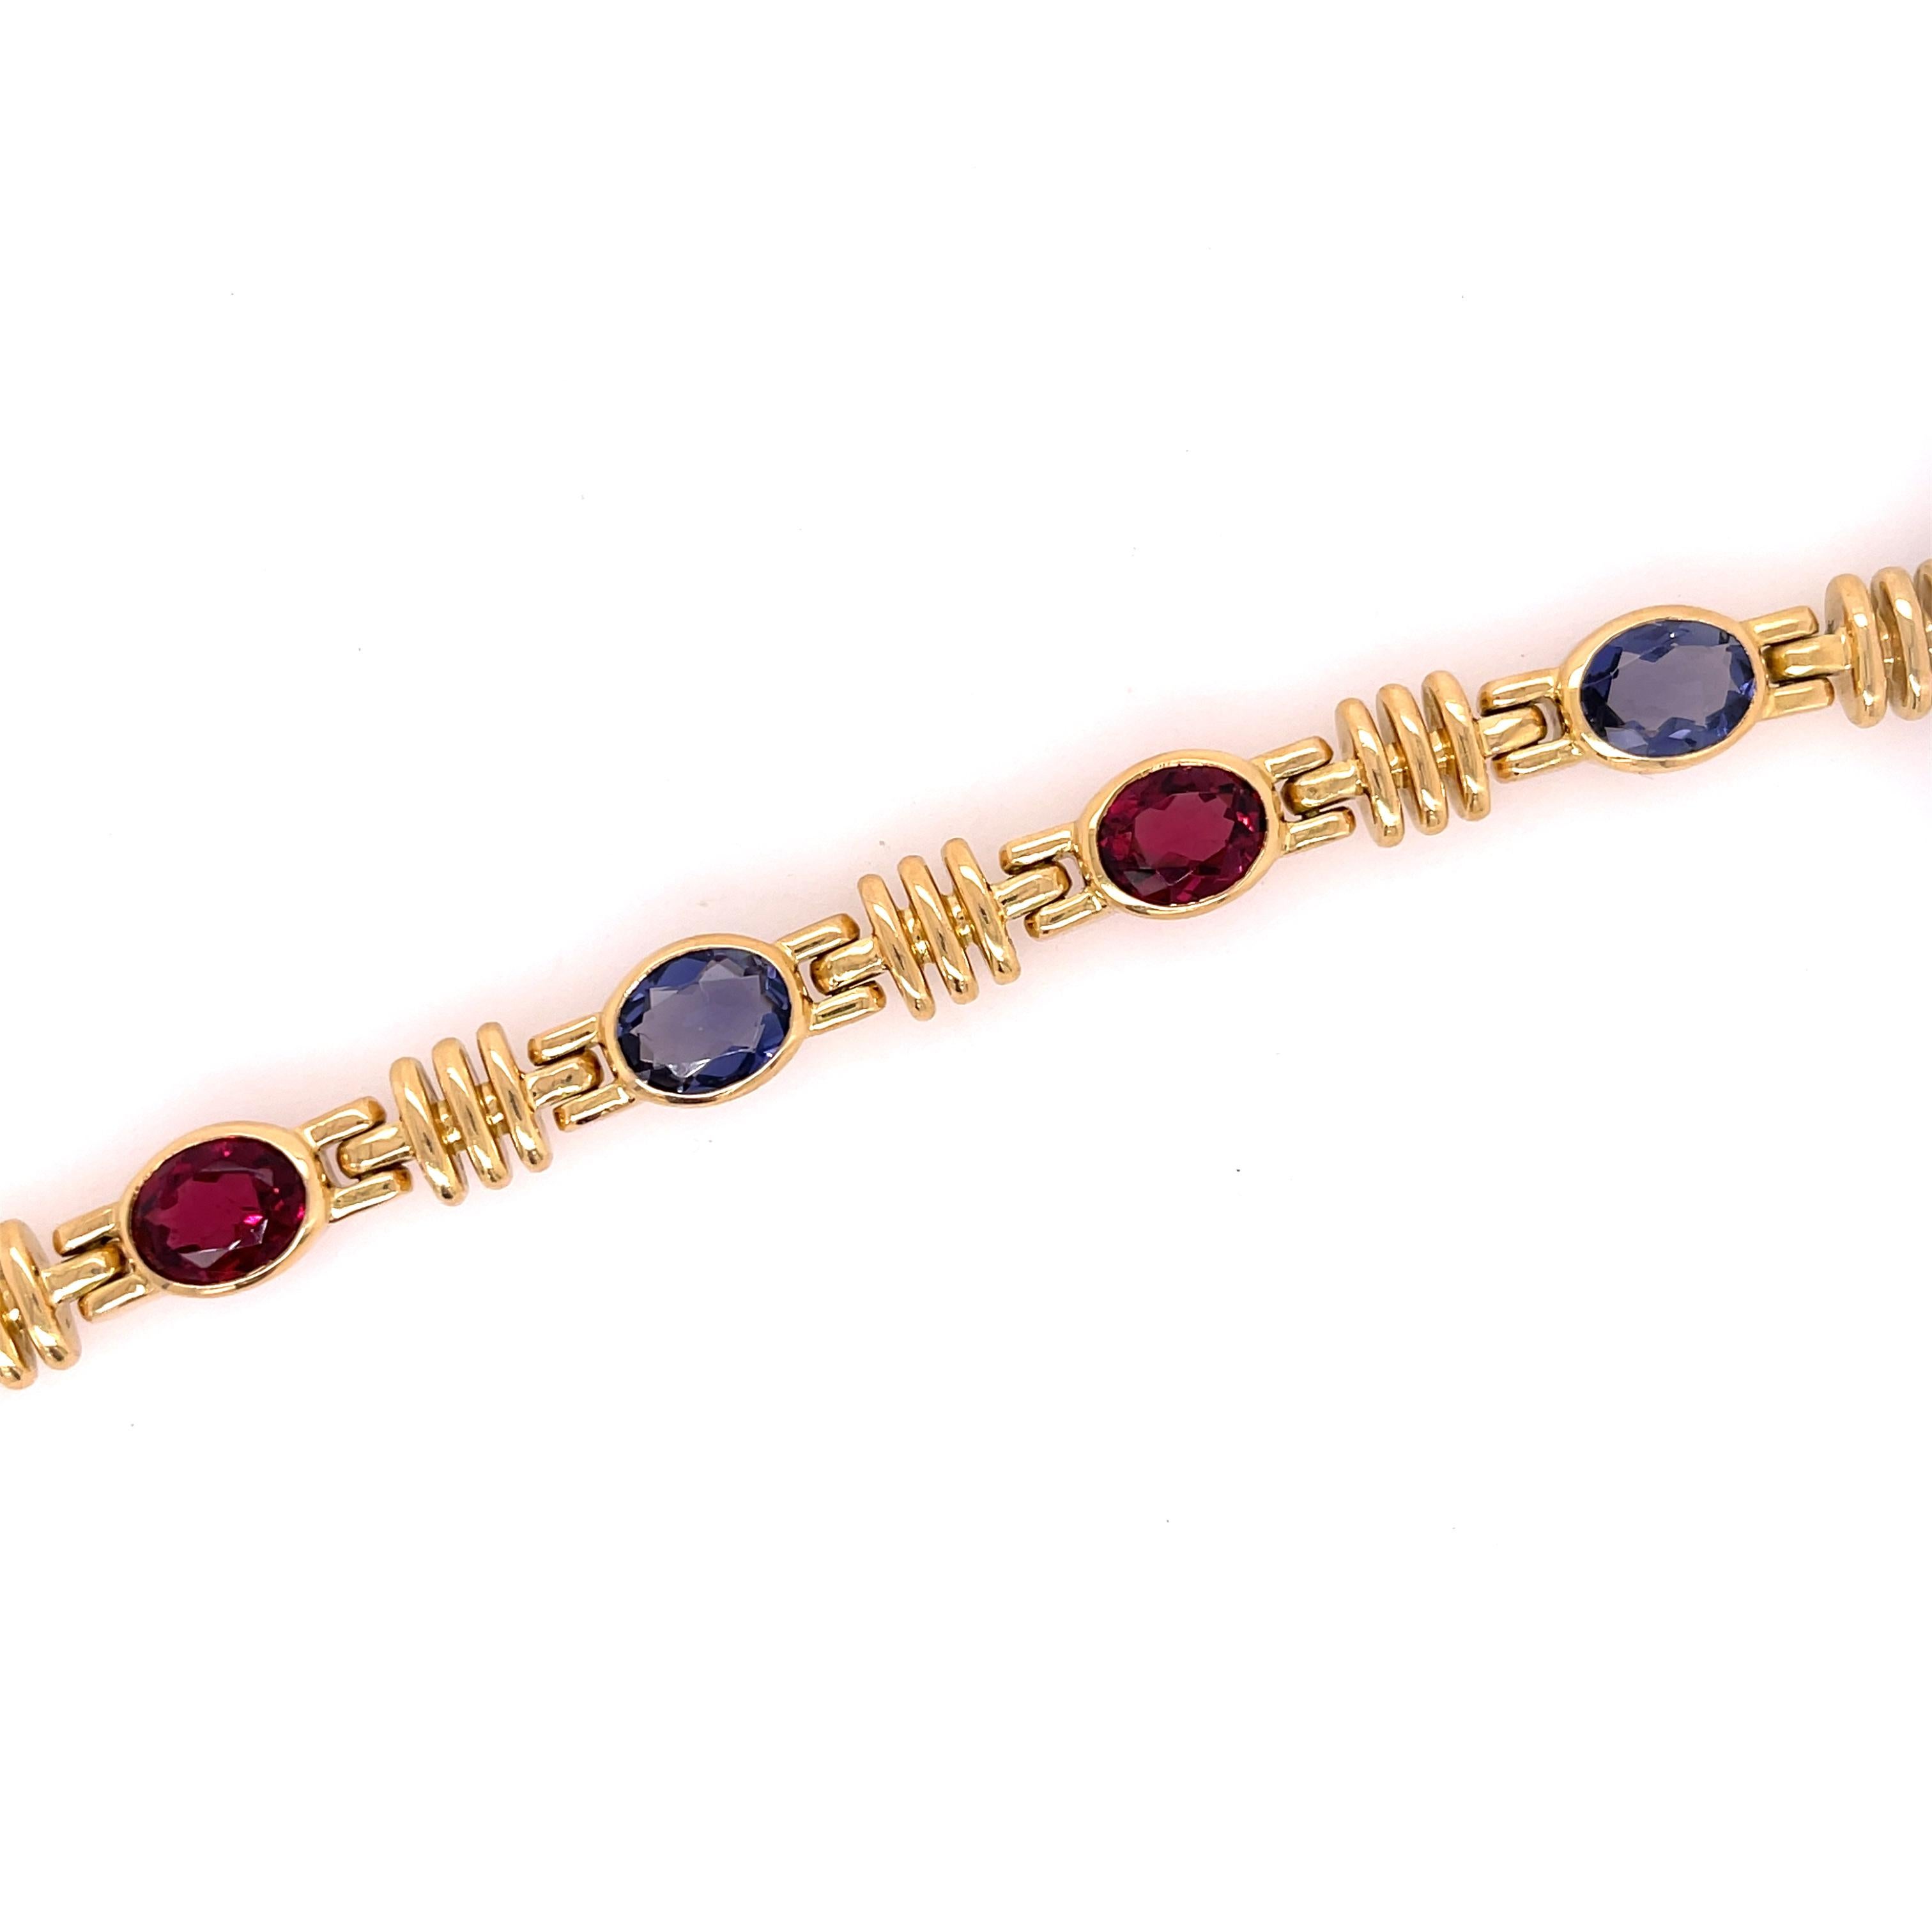 Bracelet Bulgari en or jaune 18 carats avec Iolite et Tourmaline rose. Le bracelet comporte environ 7 carats de tourmaline rose et 3,60 carats d'iolite. 
longueur de 7